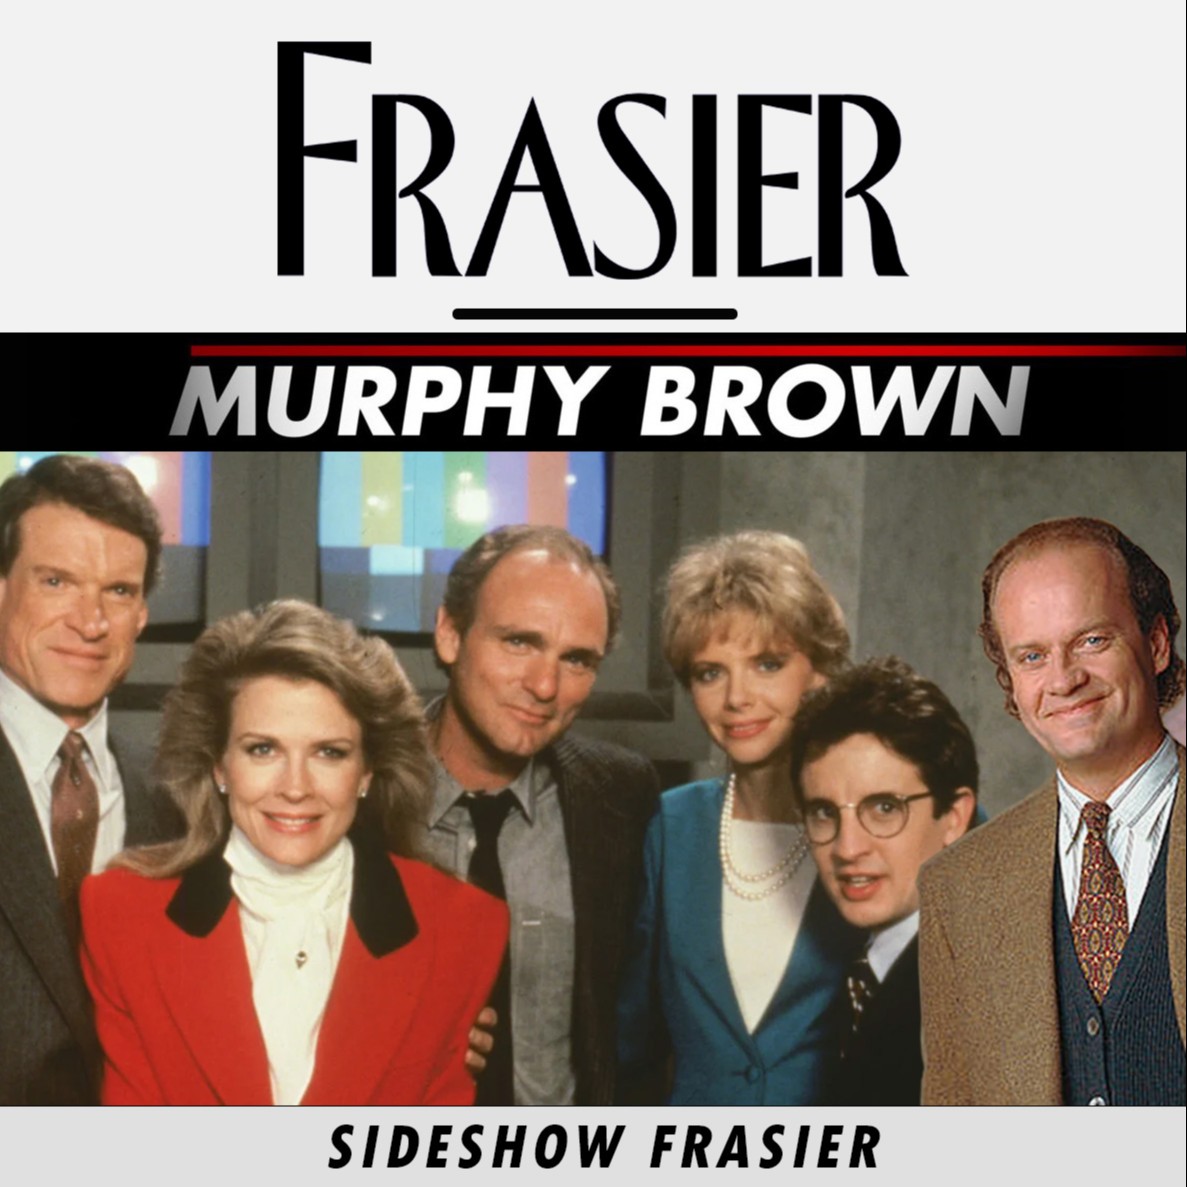 Frasier - Oops | Murphy Brown - Bah Humboldt